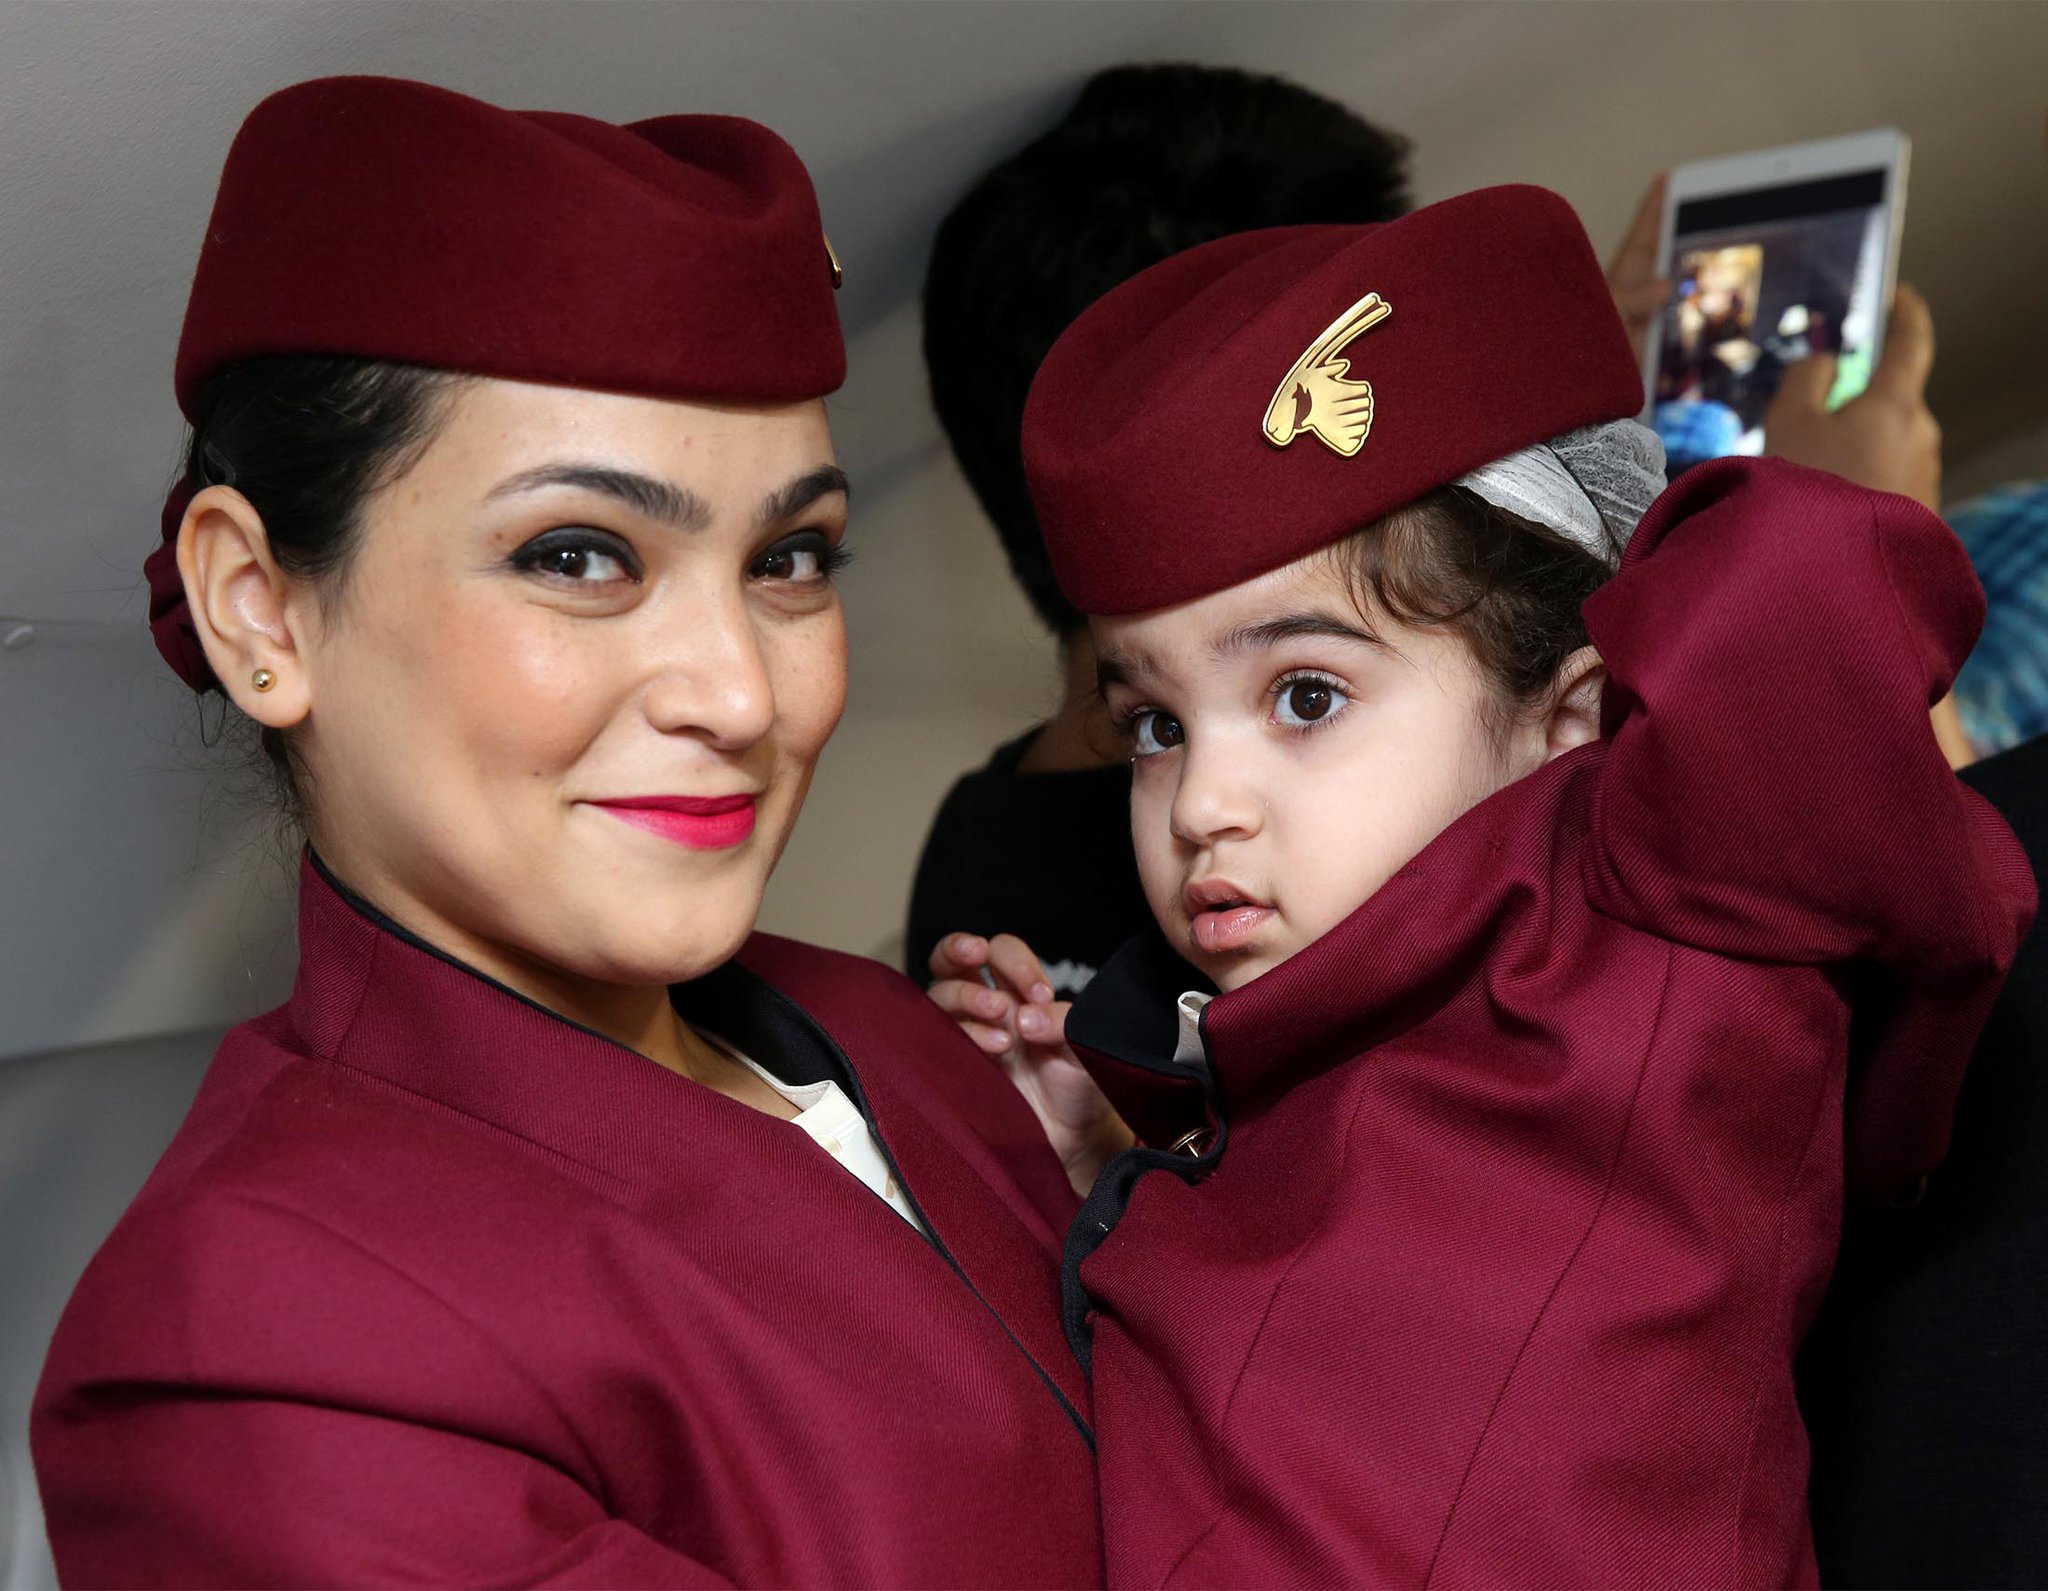 Qatar Airways on Twitter: 2048 x 1591